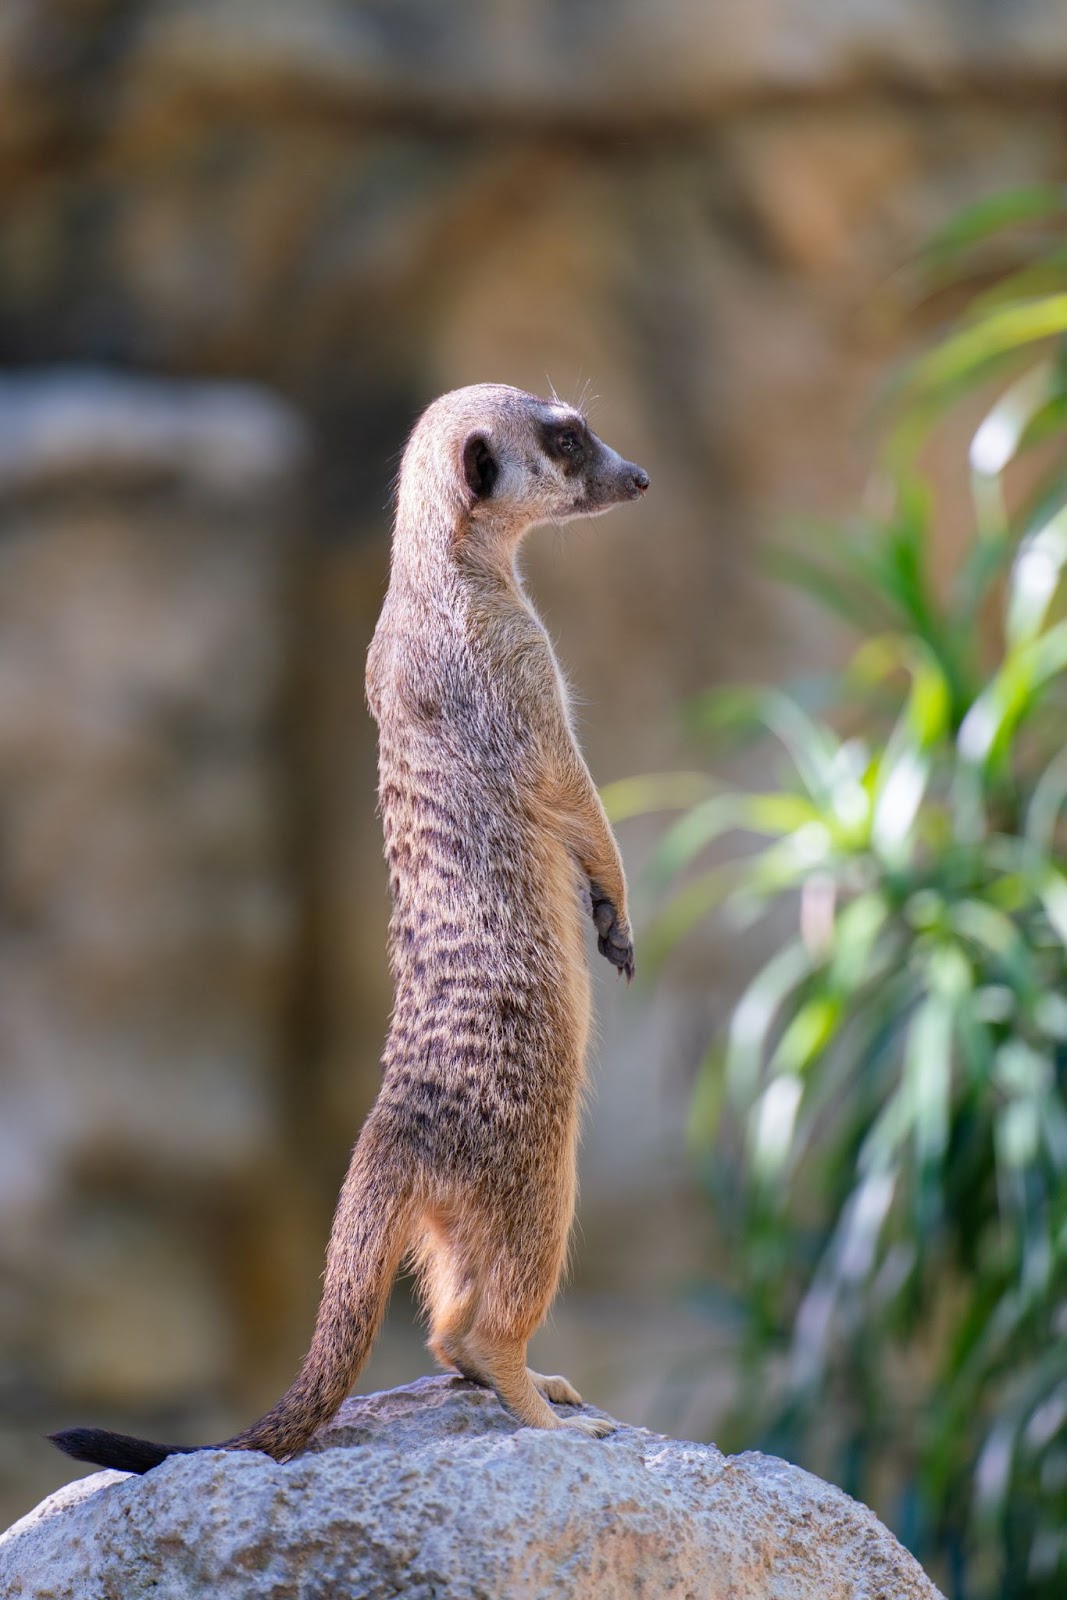 A meerkat on alert at the Pretoria Zoo